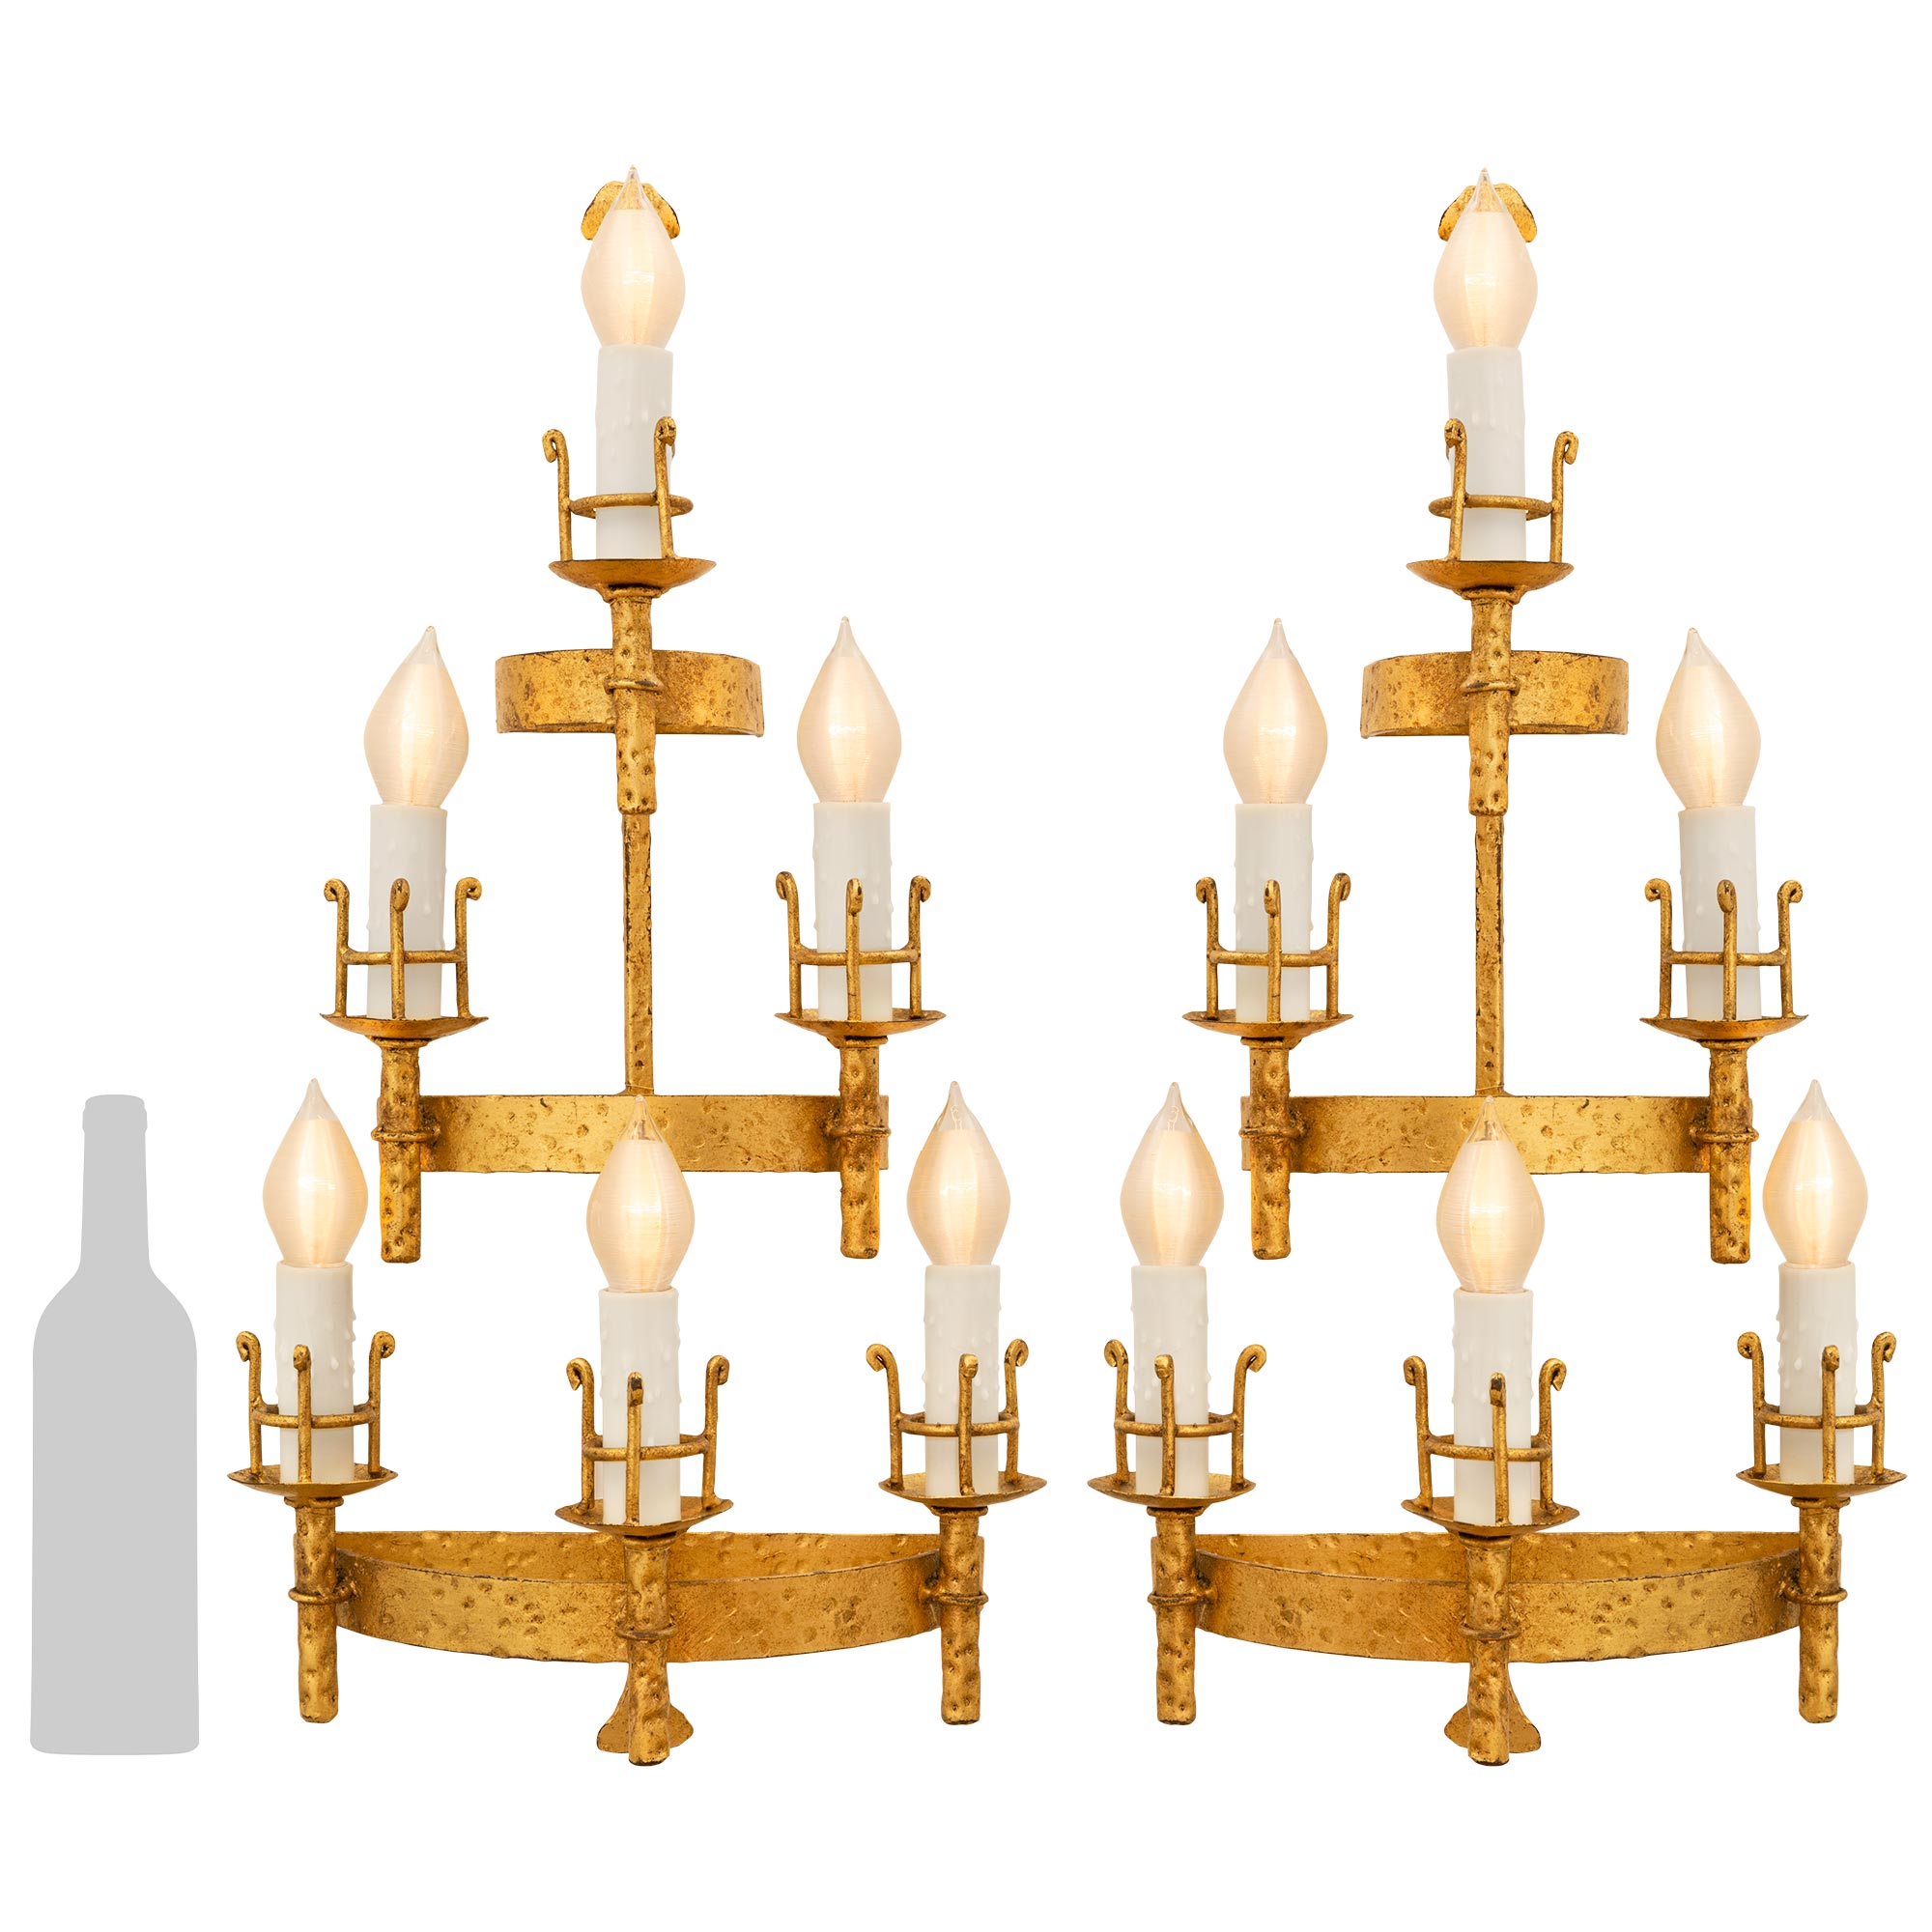 Magnifique ensemble complet de quatre appliques en métal doré de style Renaissance italienne du XIXe siècle. Chaque applique à six bras présente d'élégants supports incurvés sur trois niveaux, chacun présentant des motifs martelés très décoratifs et